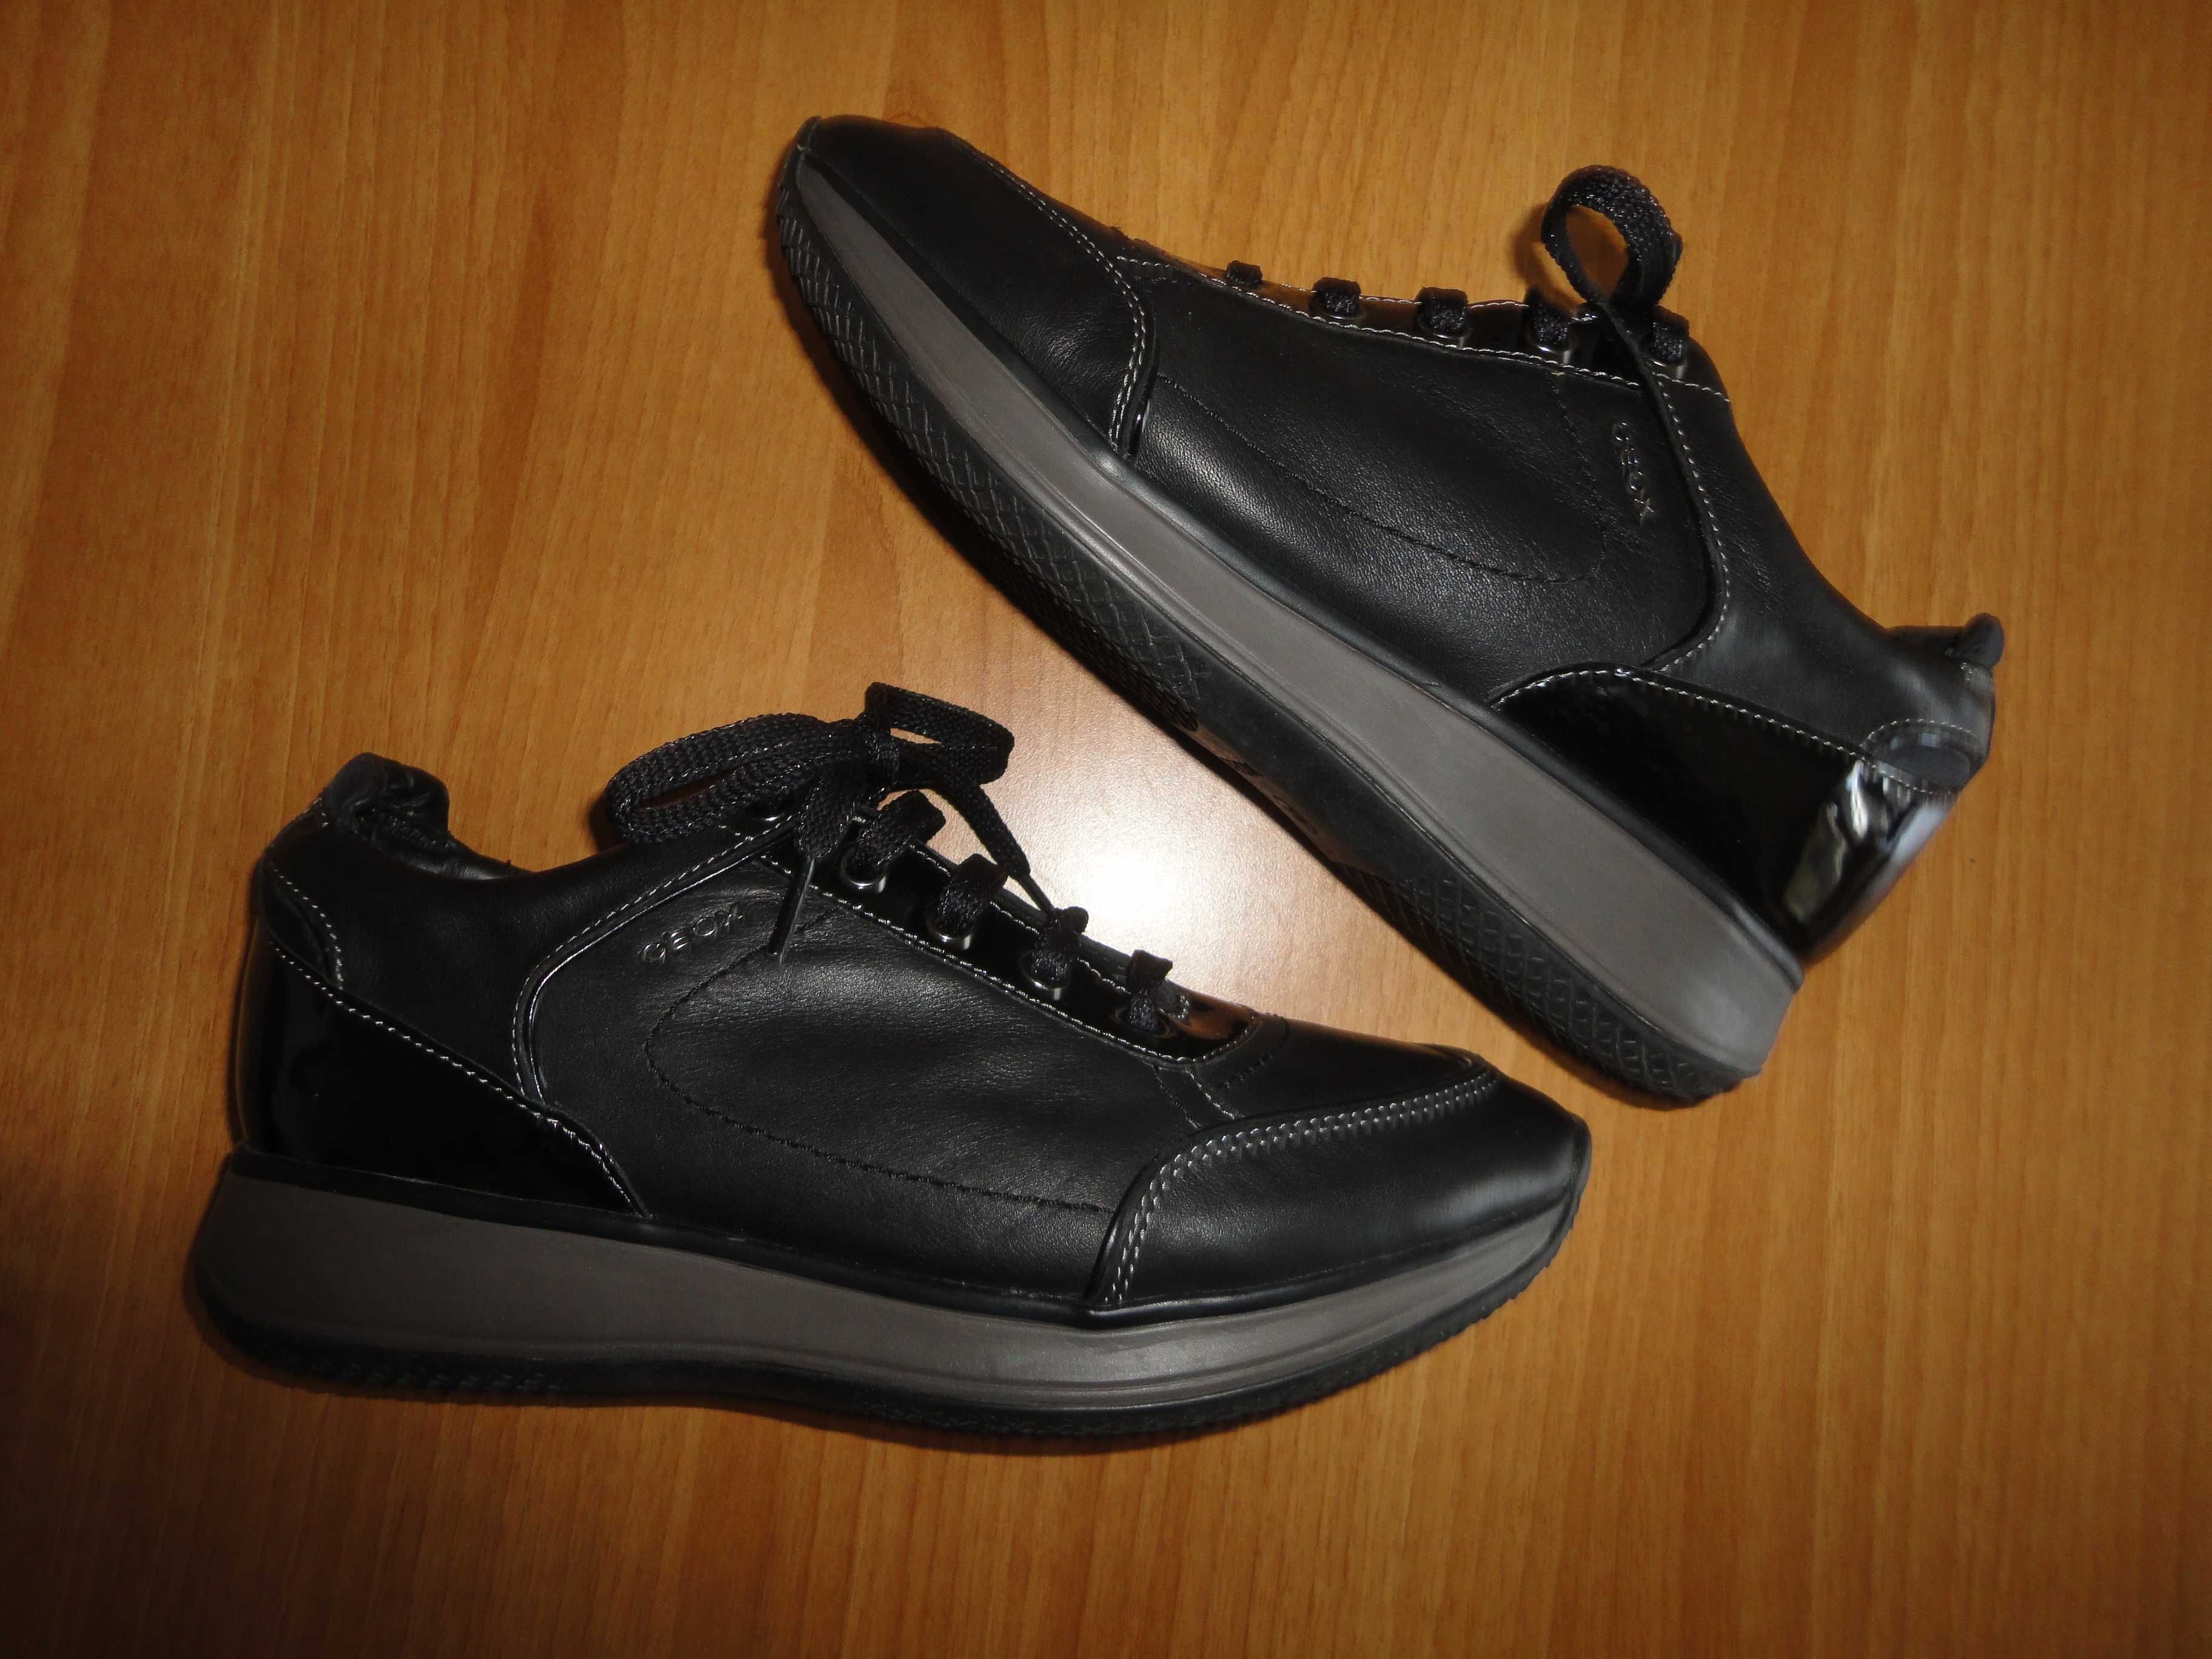 N39 GEOX/естествена кожа/оригинални дамски обувки